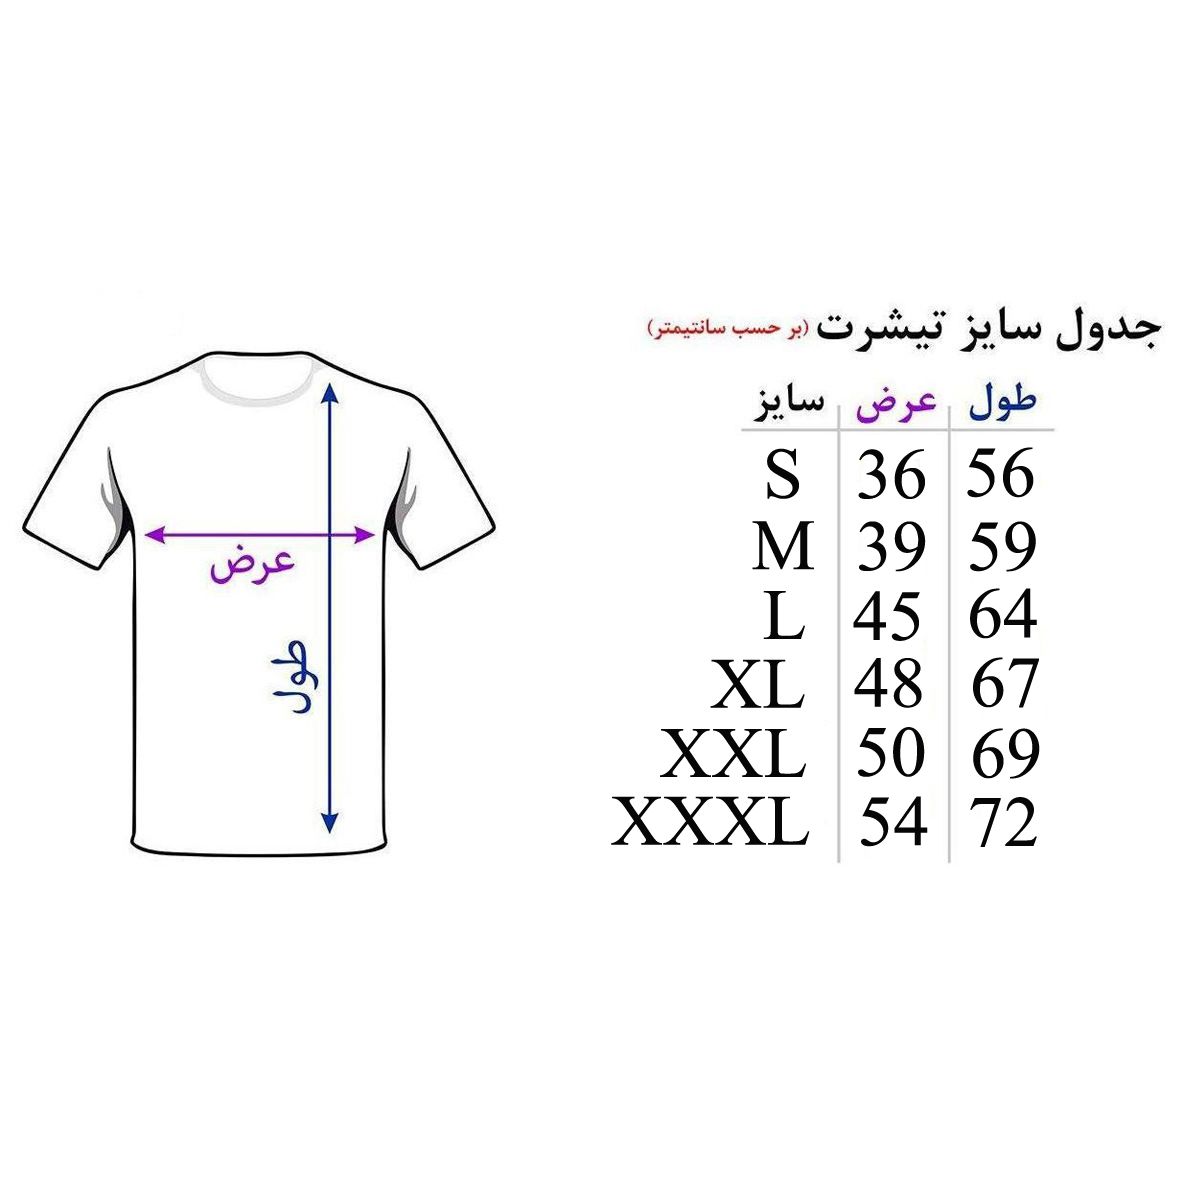 تی شرت آستین کوتاه زنانه اسد طرح وان دایرکشن کد 131 -  - 4